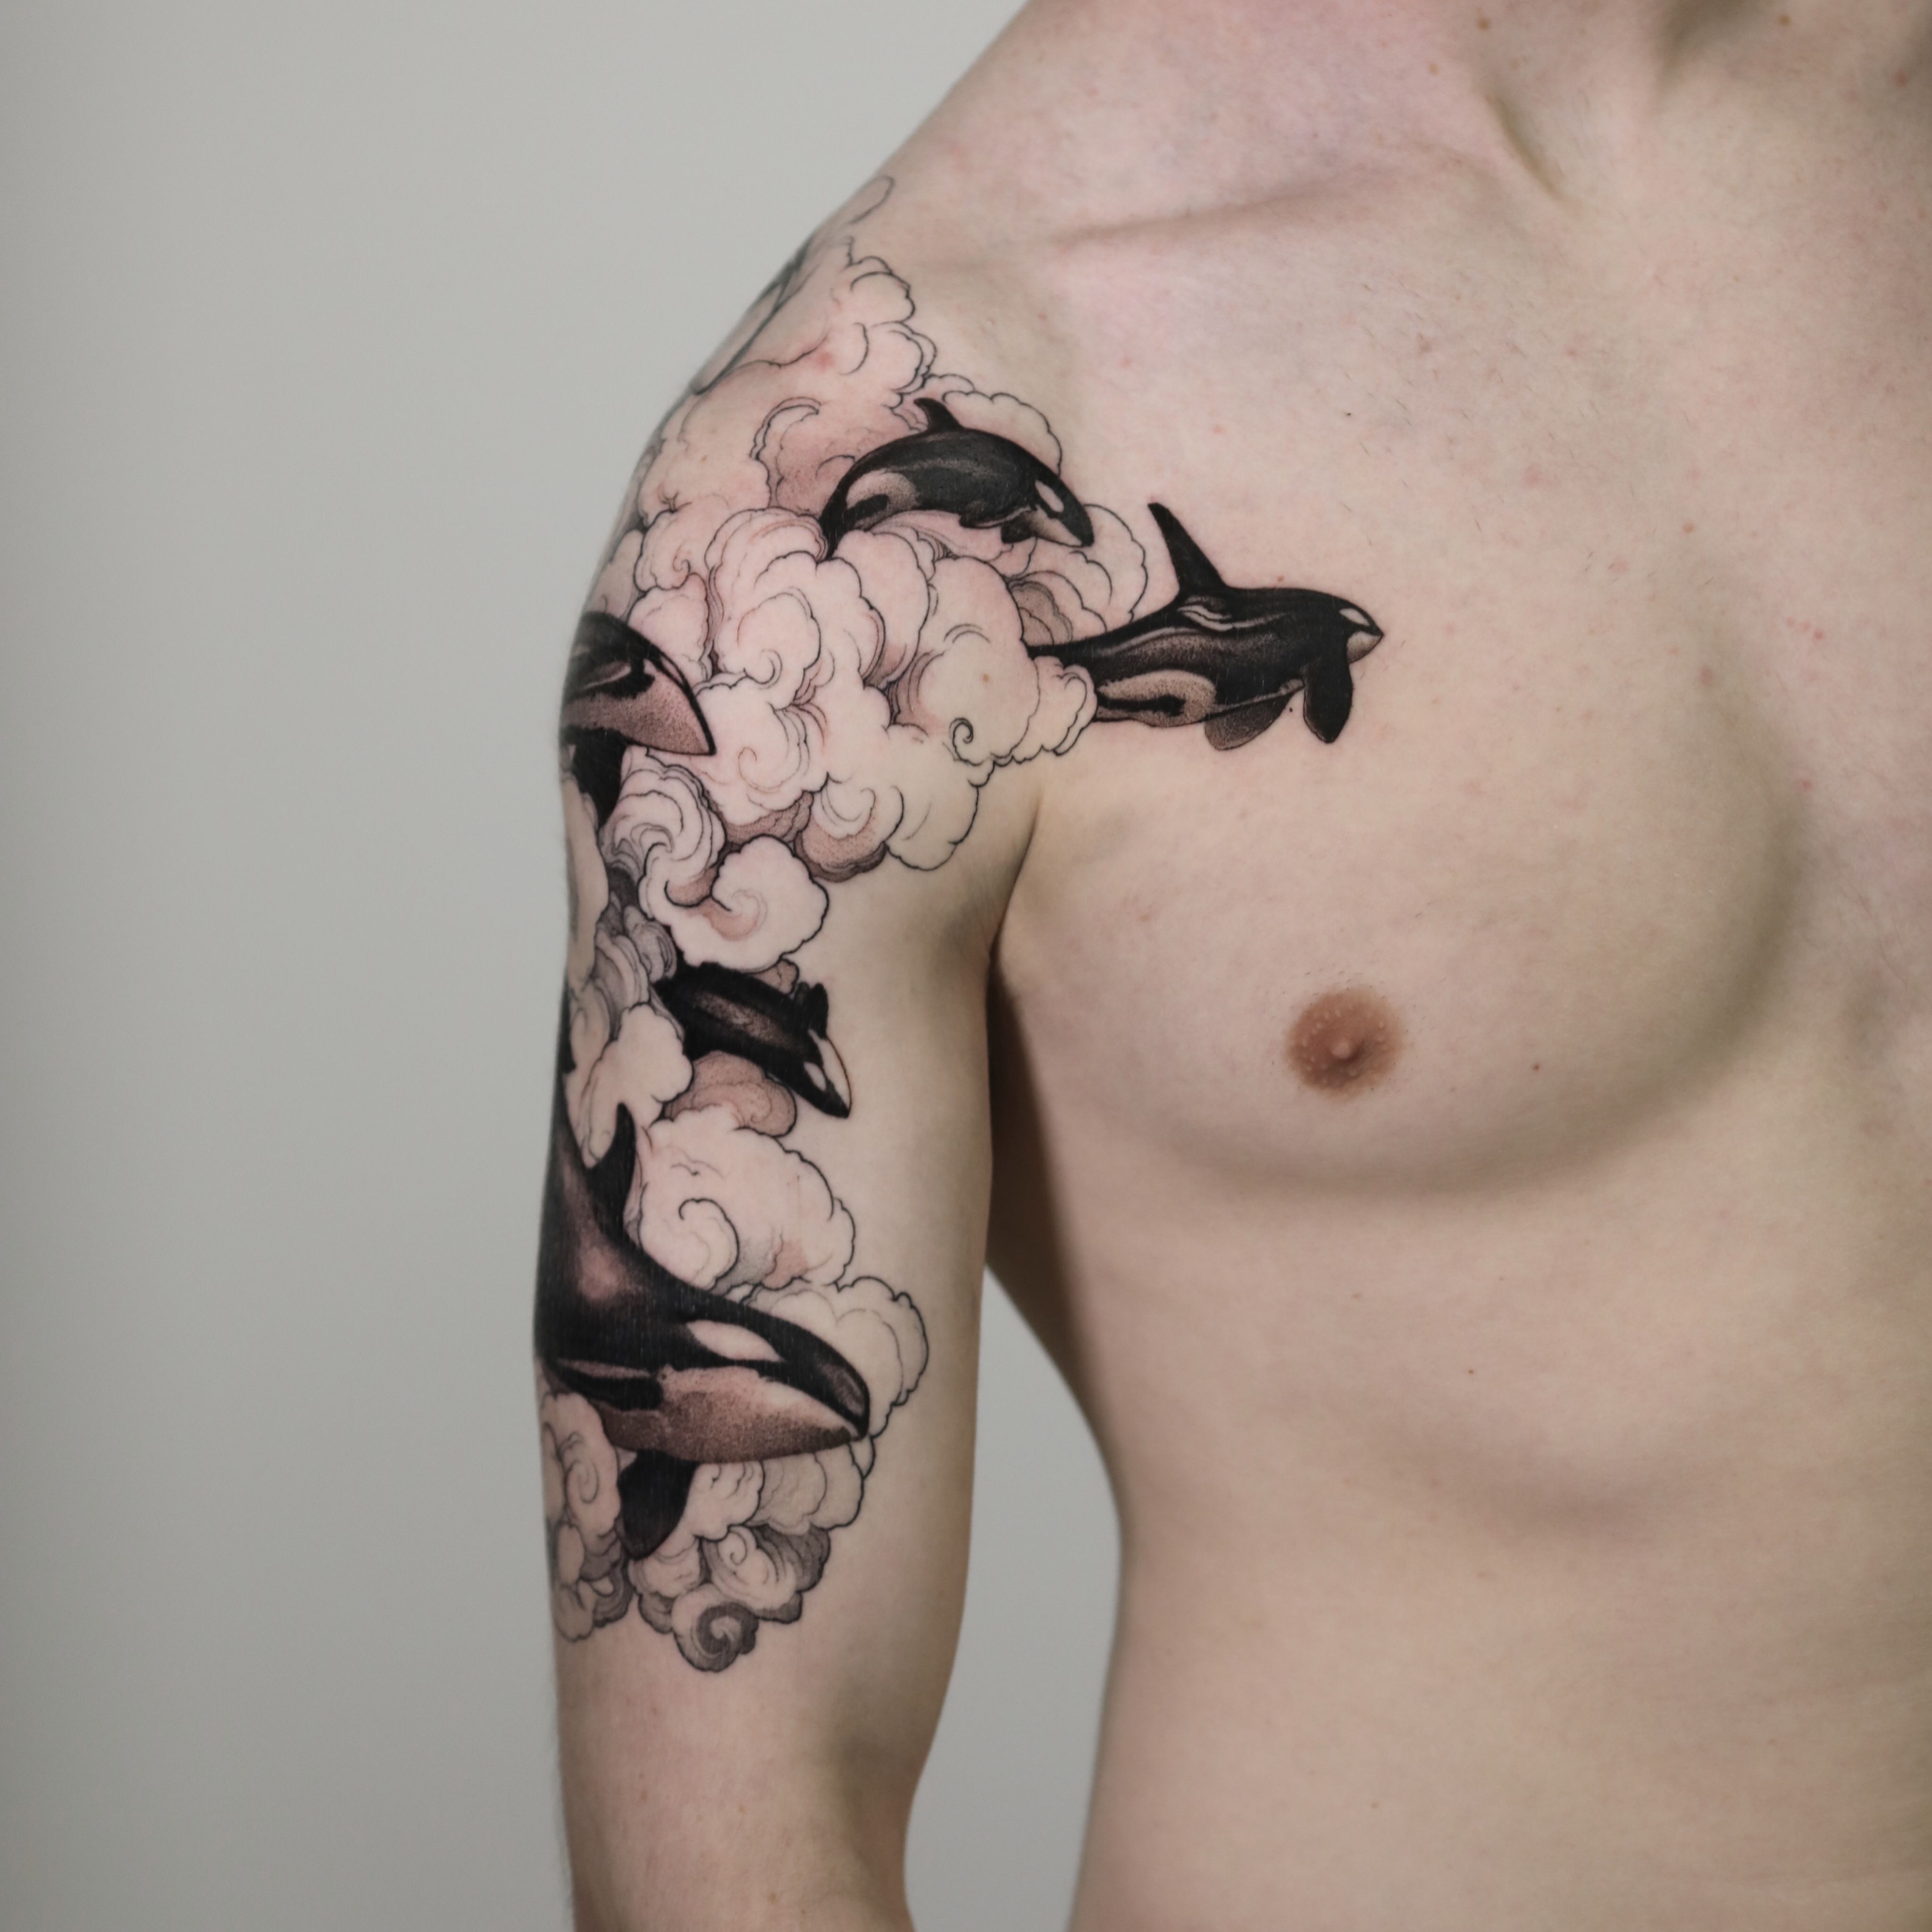 Killer Ink Tattoo on X: 